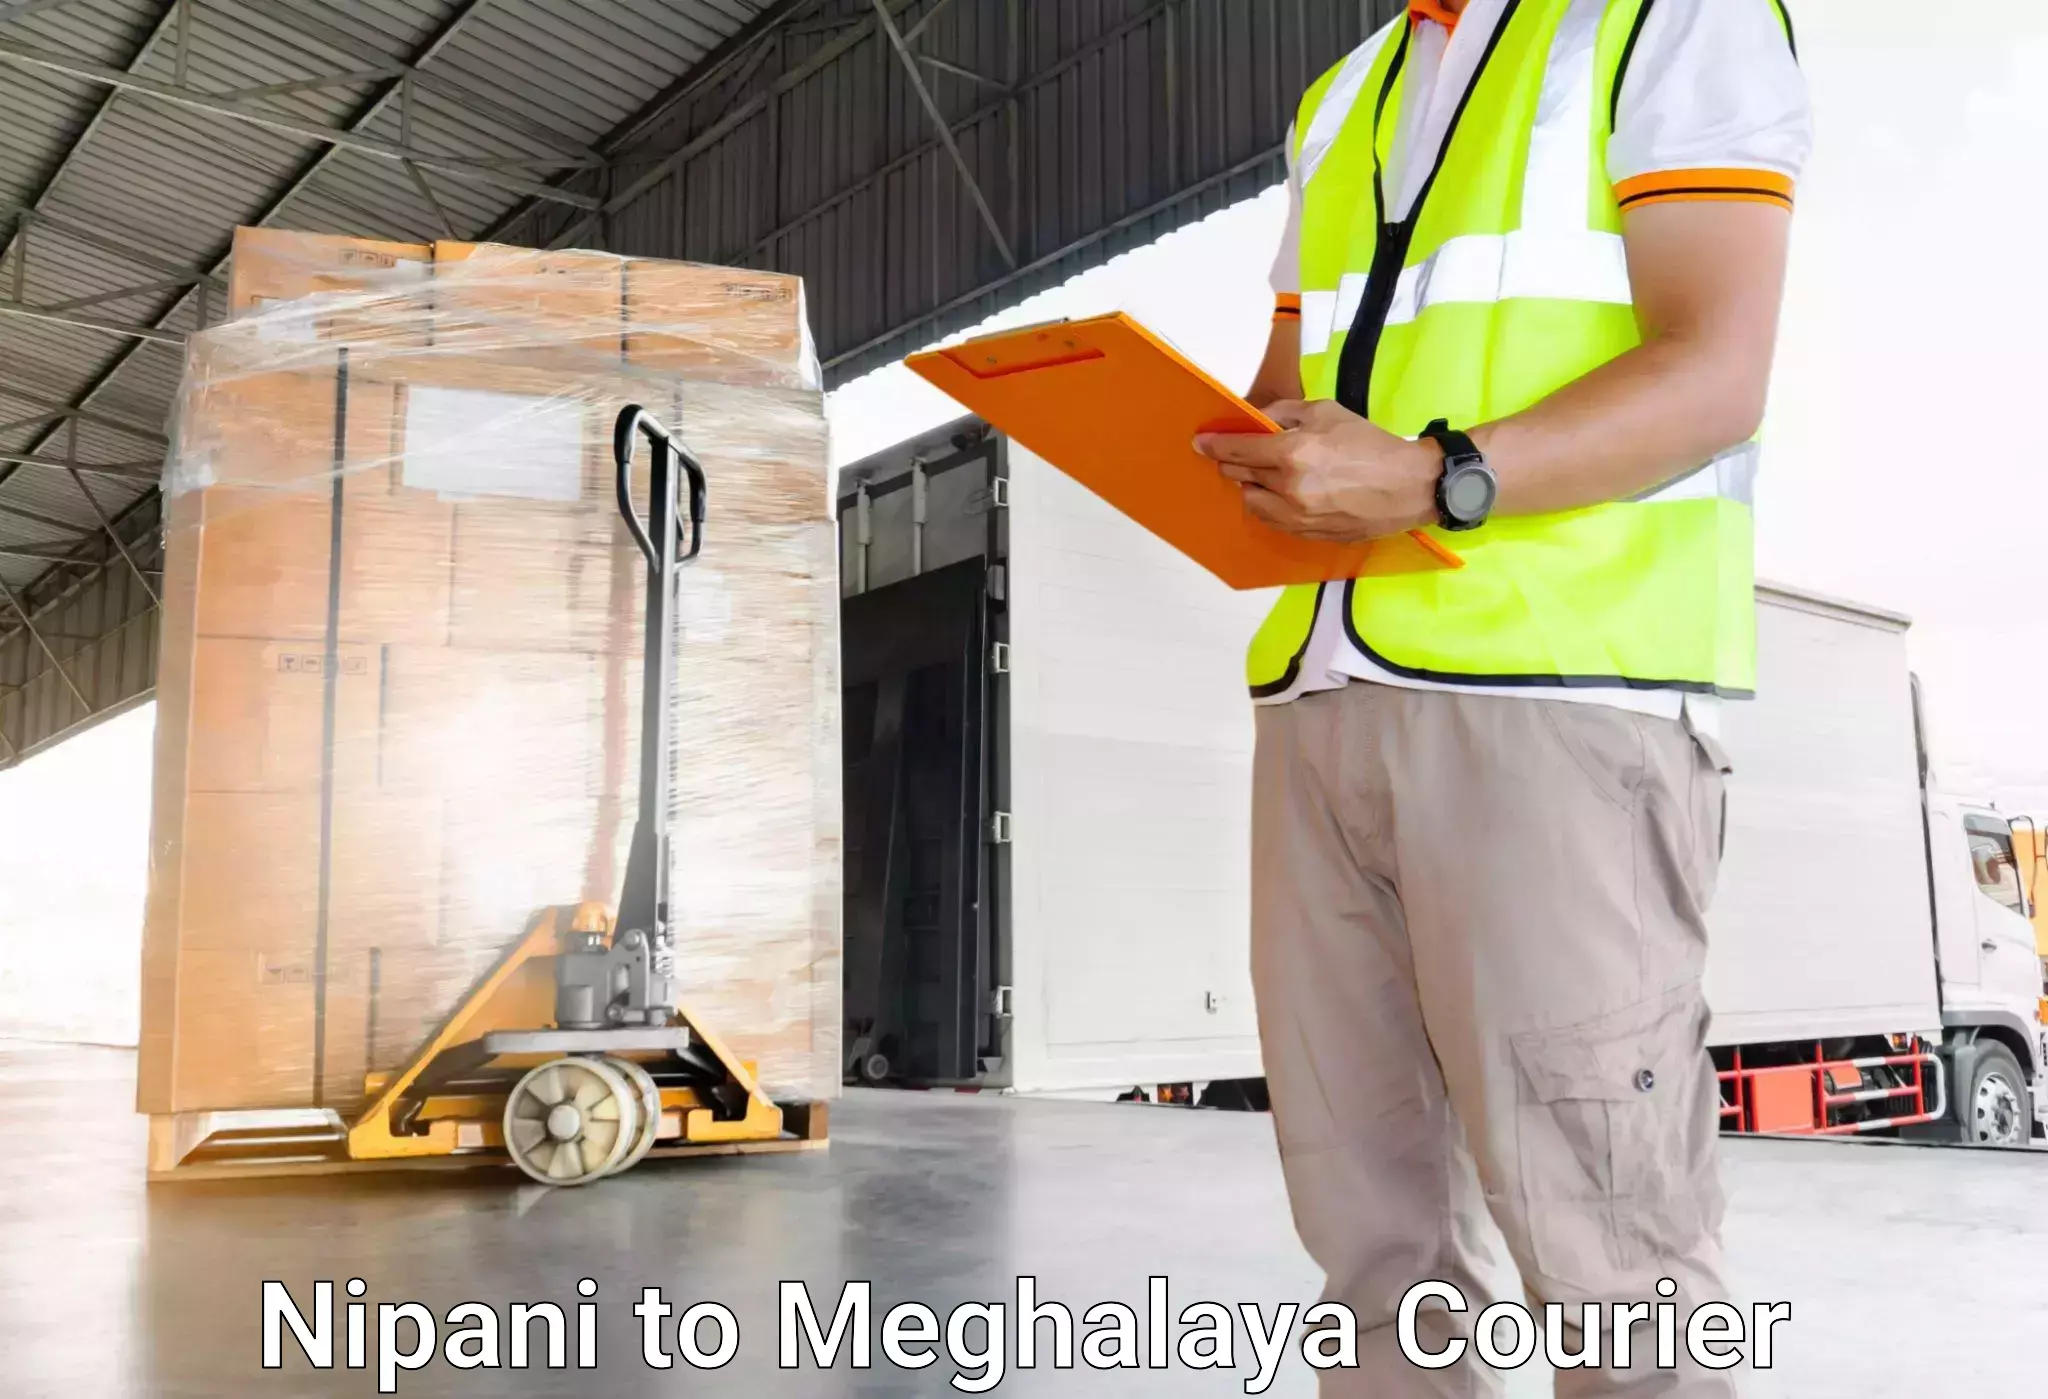 Luggage transport company Nipani to Shillong